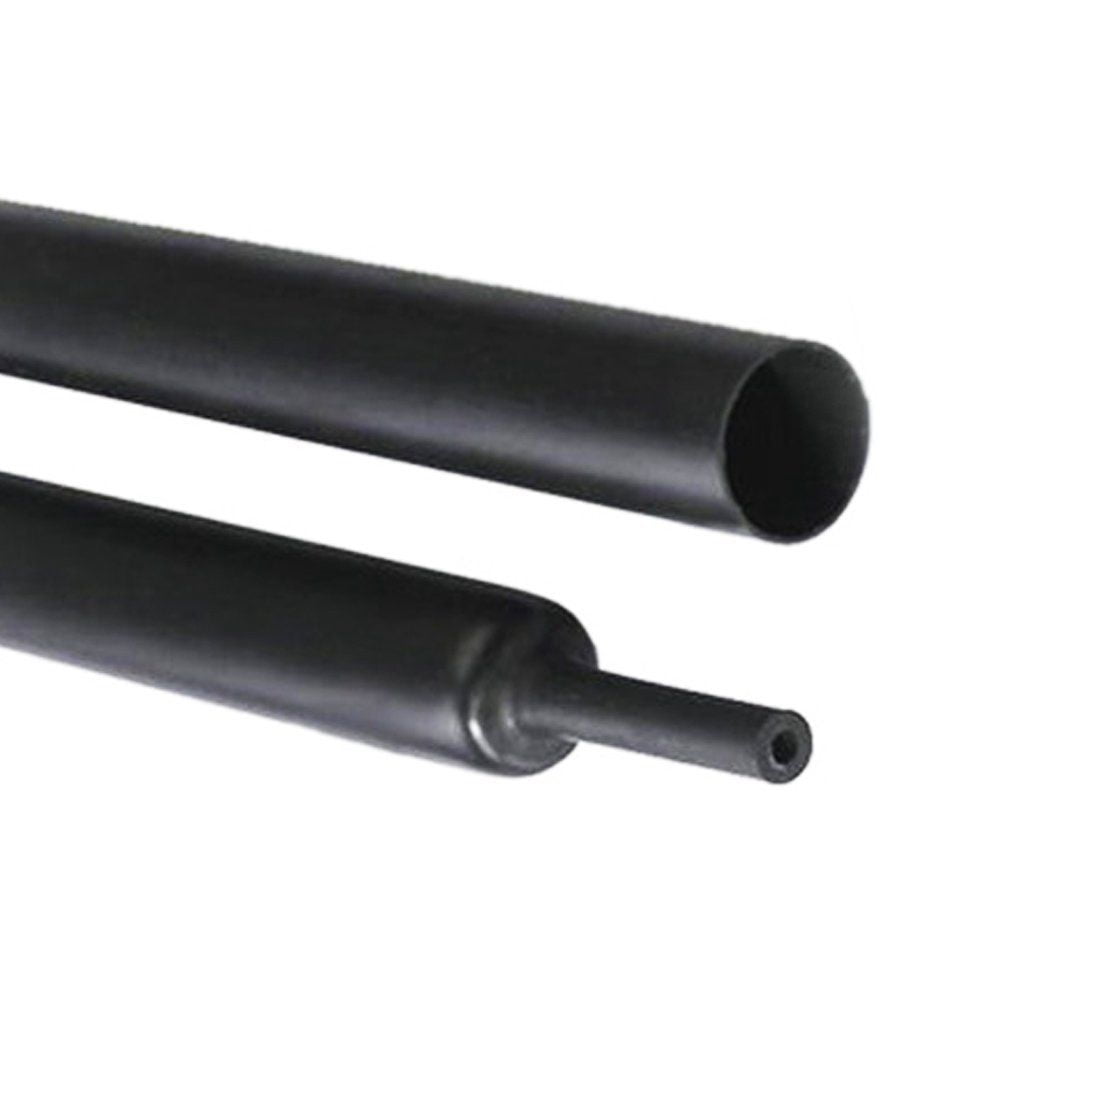 Black 3:1 Heat Shrink Electric Cable Sleeving Tubing Tube Waterproof Heatshrink